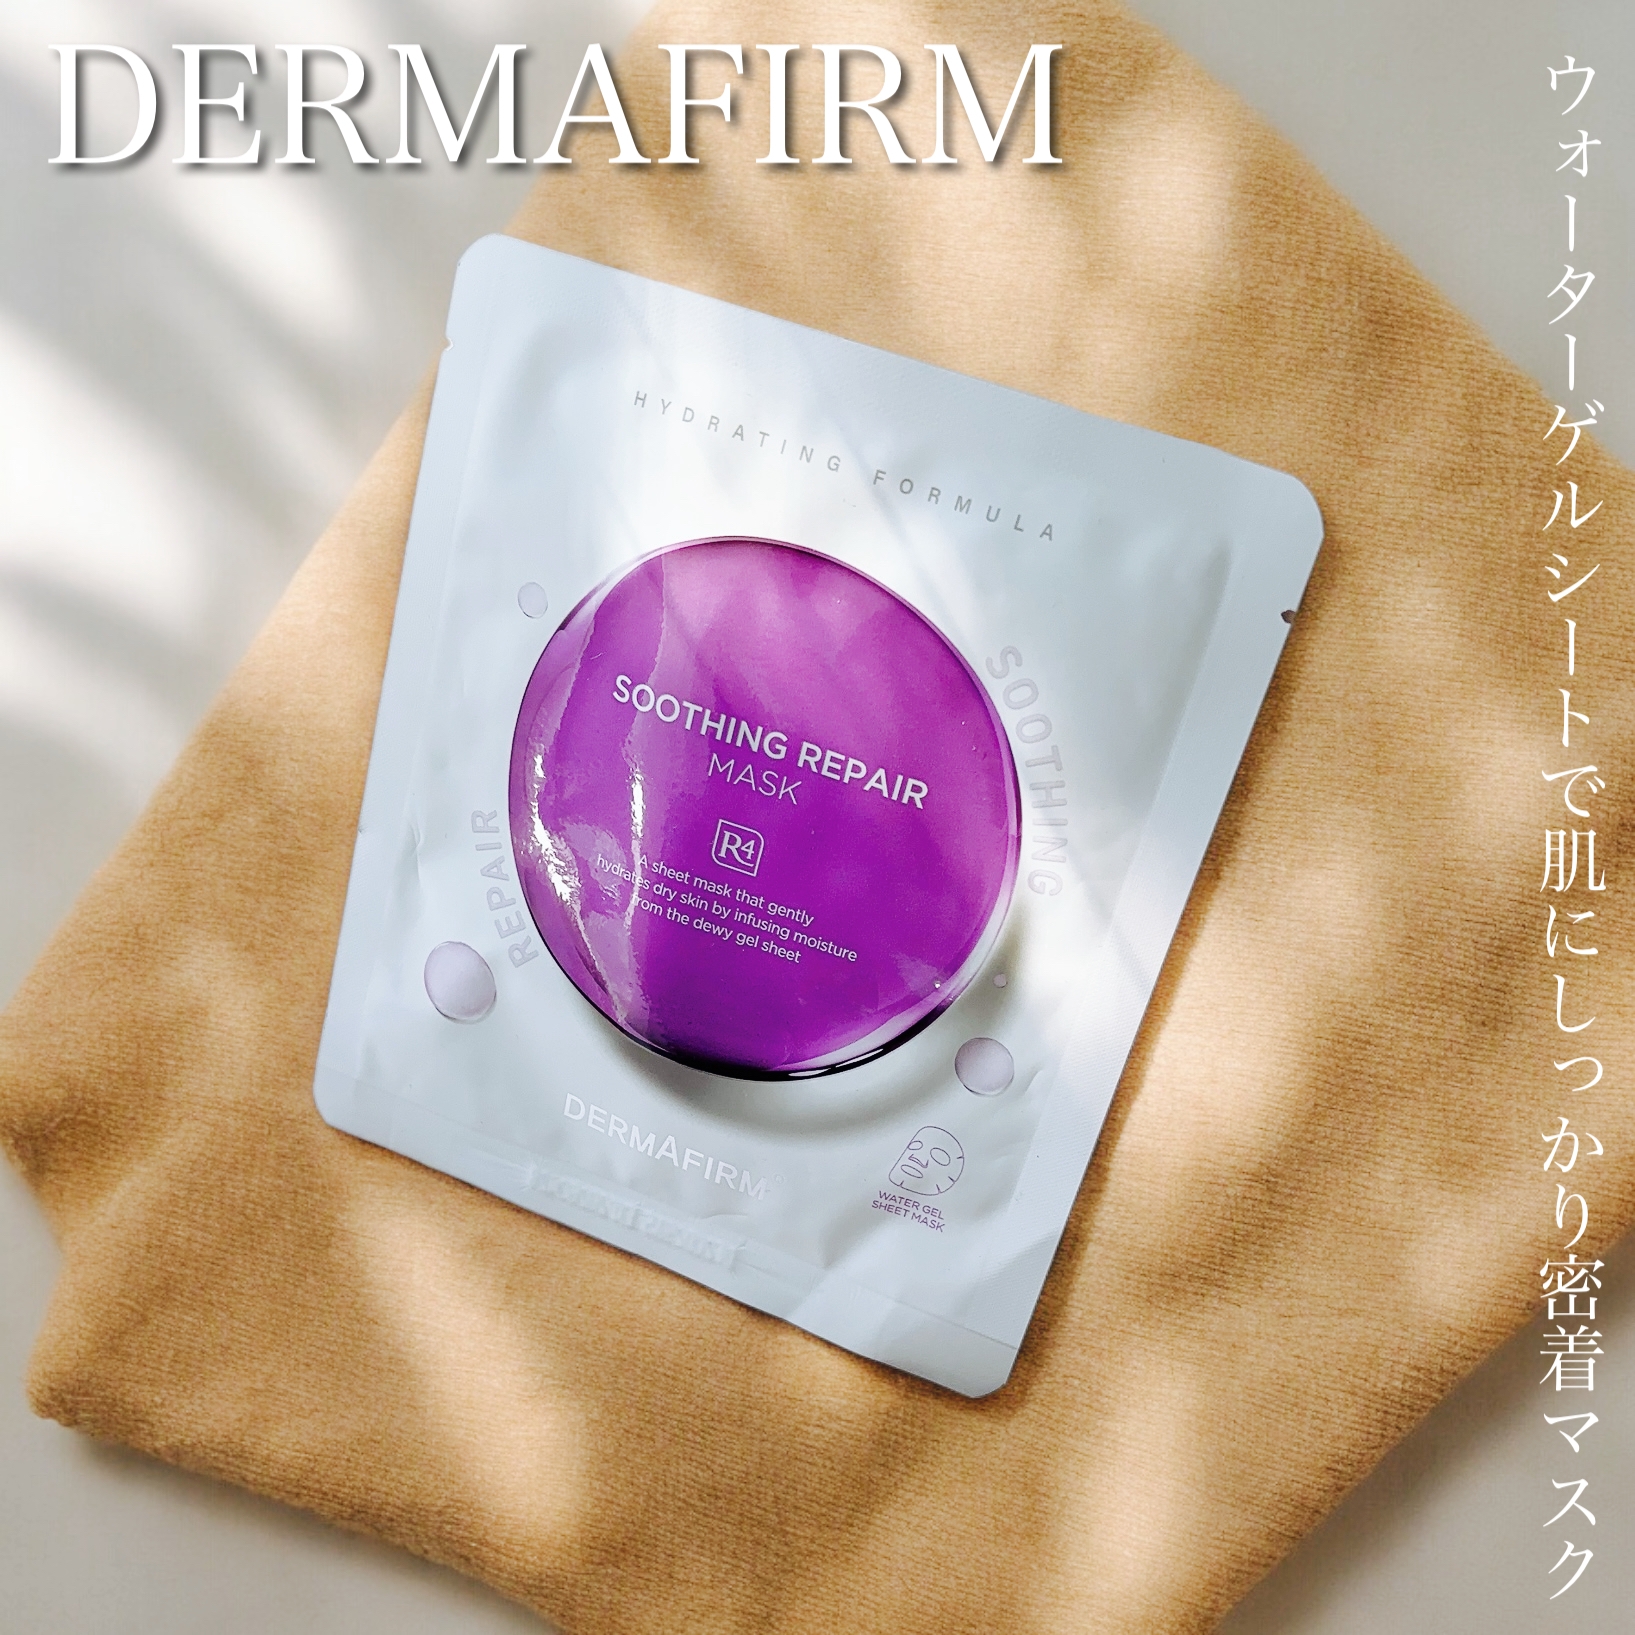 DERMAFIRM(ダーマファーム) R4 スージングリペアマスクの良い点・メリットに関するふっきーさんの口コミ画像1